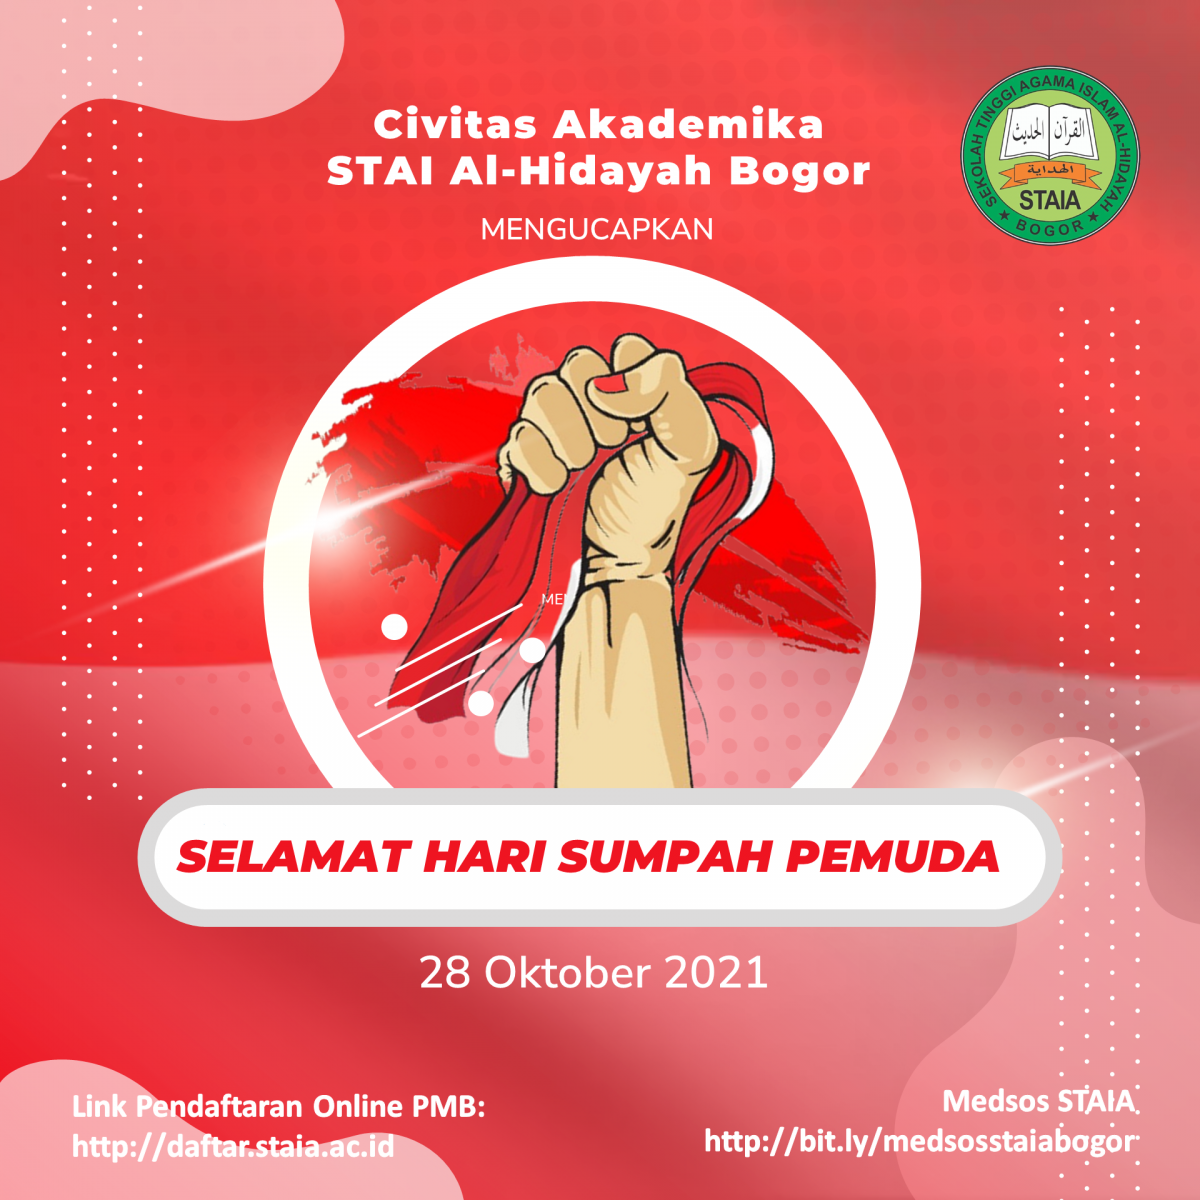 Civitas Akademika STAI Al-Hidayah Bogor Mengucapkan Selamat Hari Sumpah Pemuda